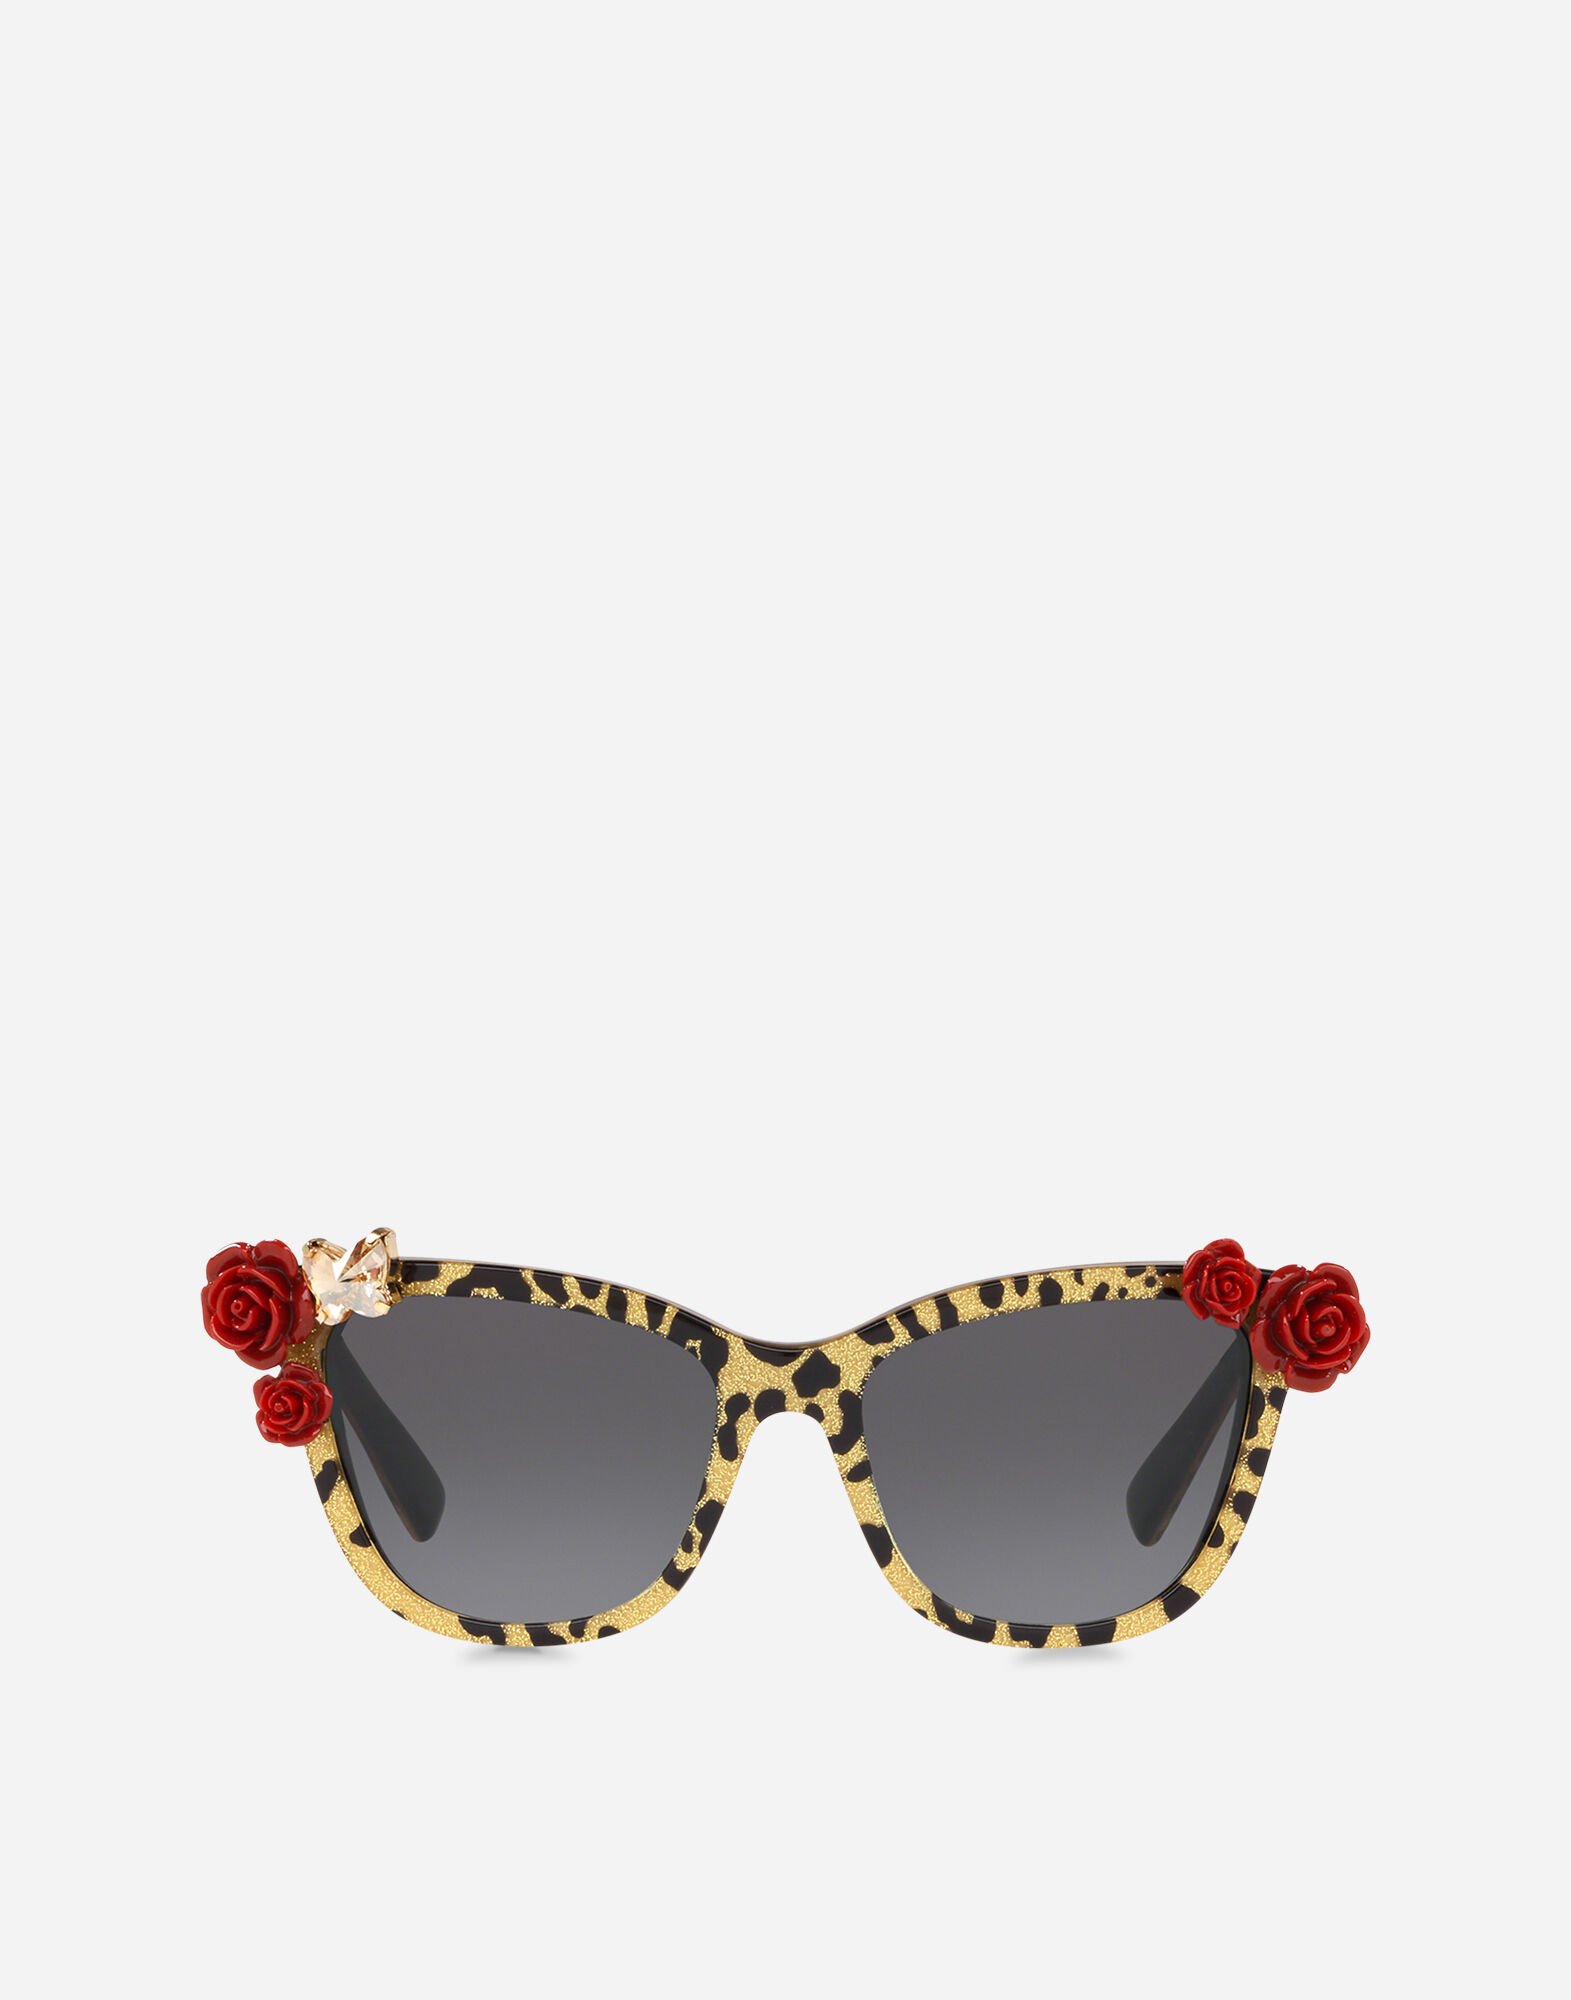 Dolce & Gabbana Leo & roses sunglasses Orange VG600KVN86Q